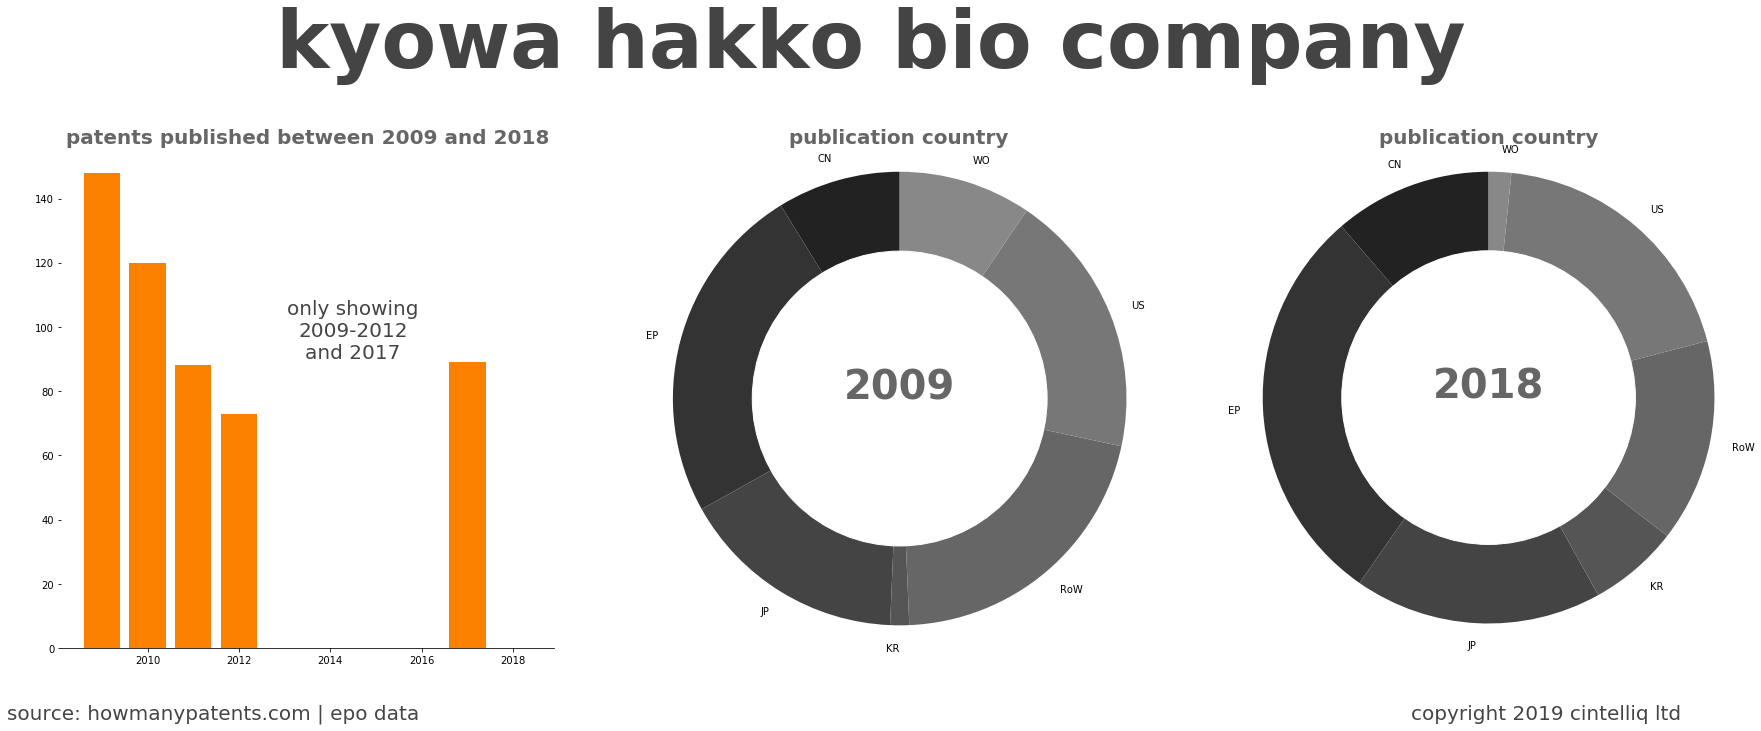 summary of patents for Kyowa Hakko Bio Company